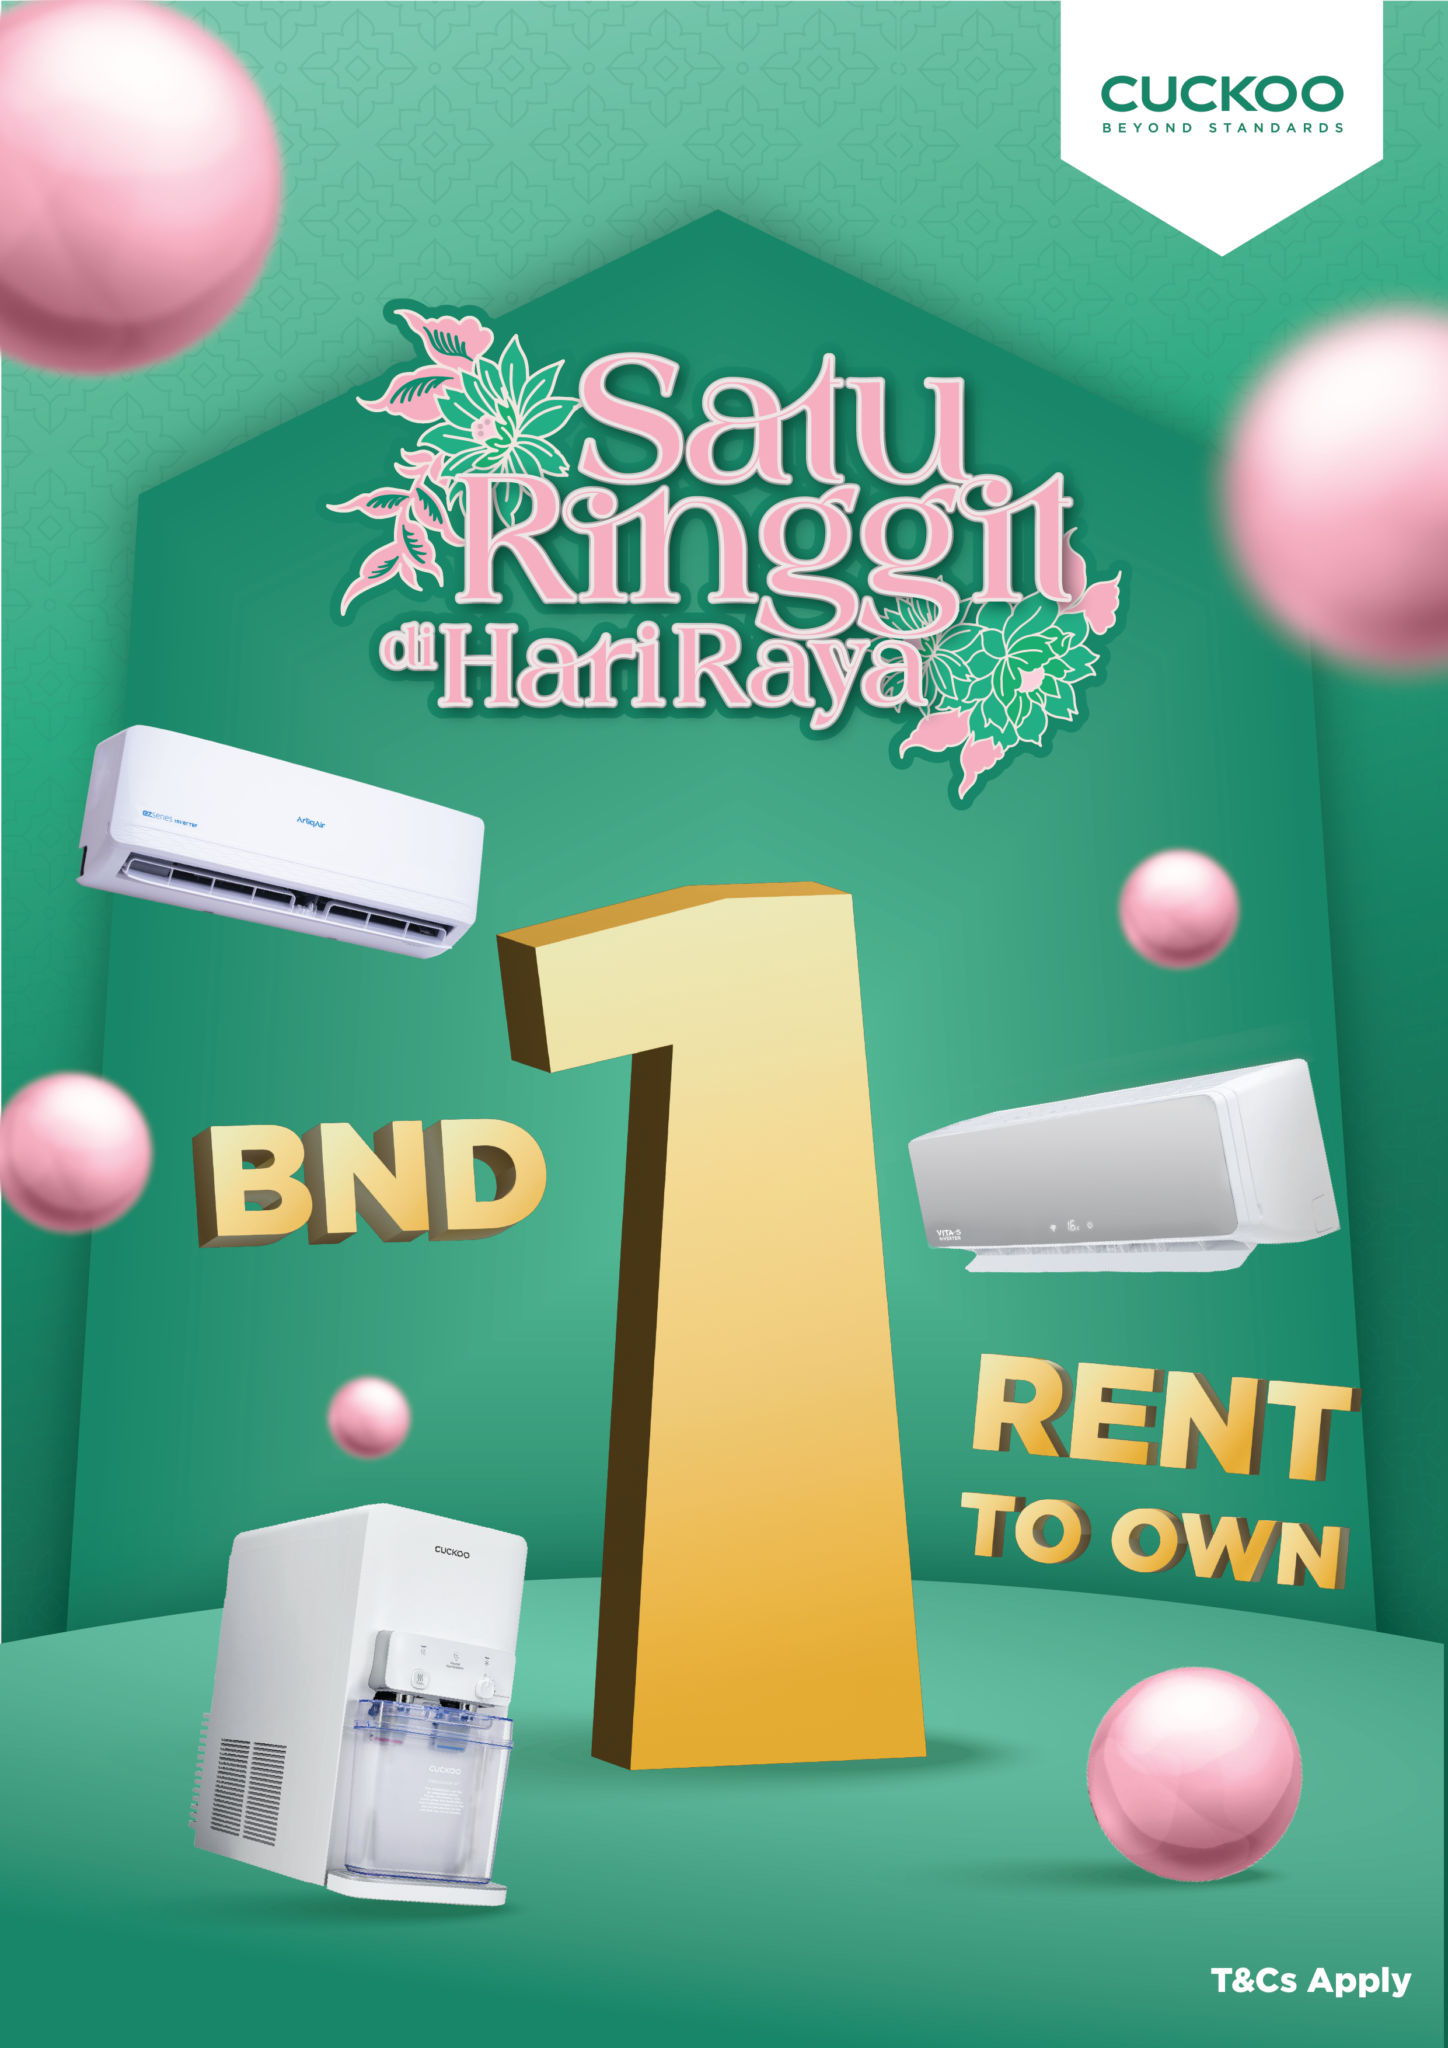 Satu Ringgit di Hari Raya; BND 1 Rent to Own